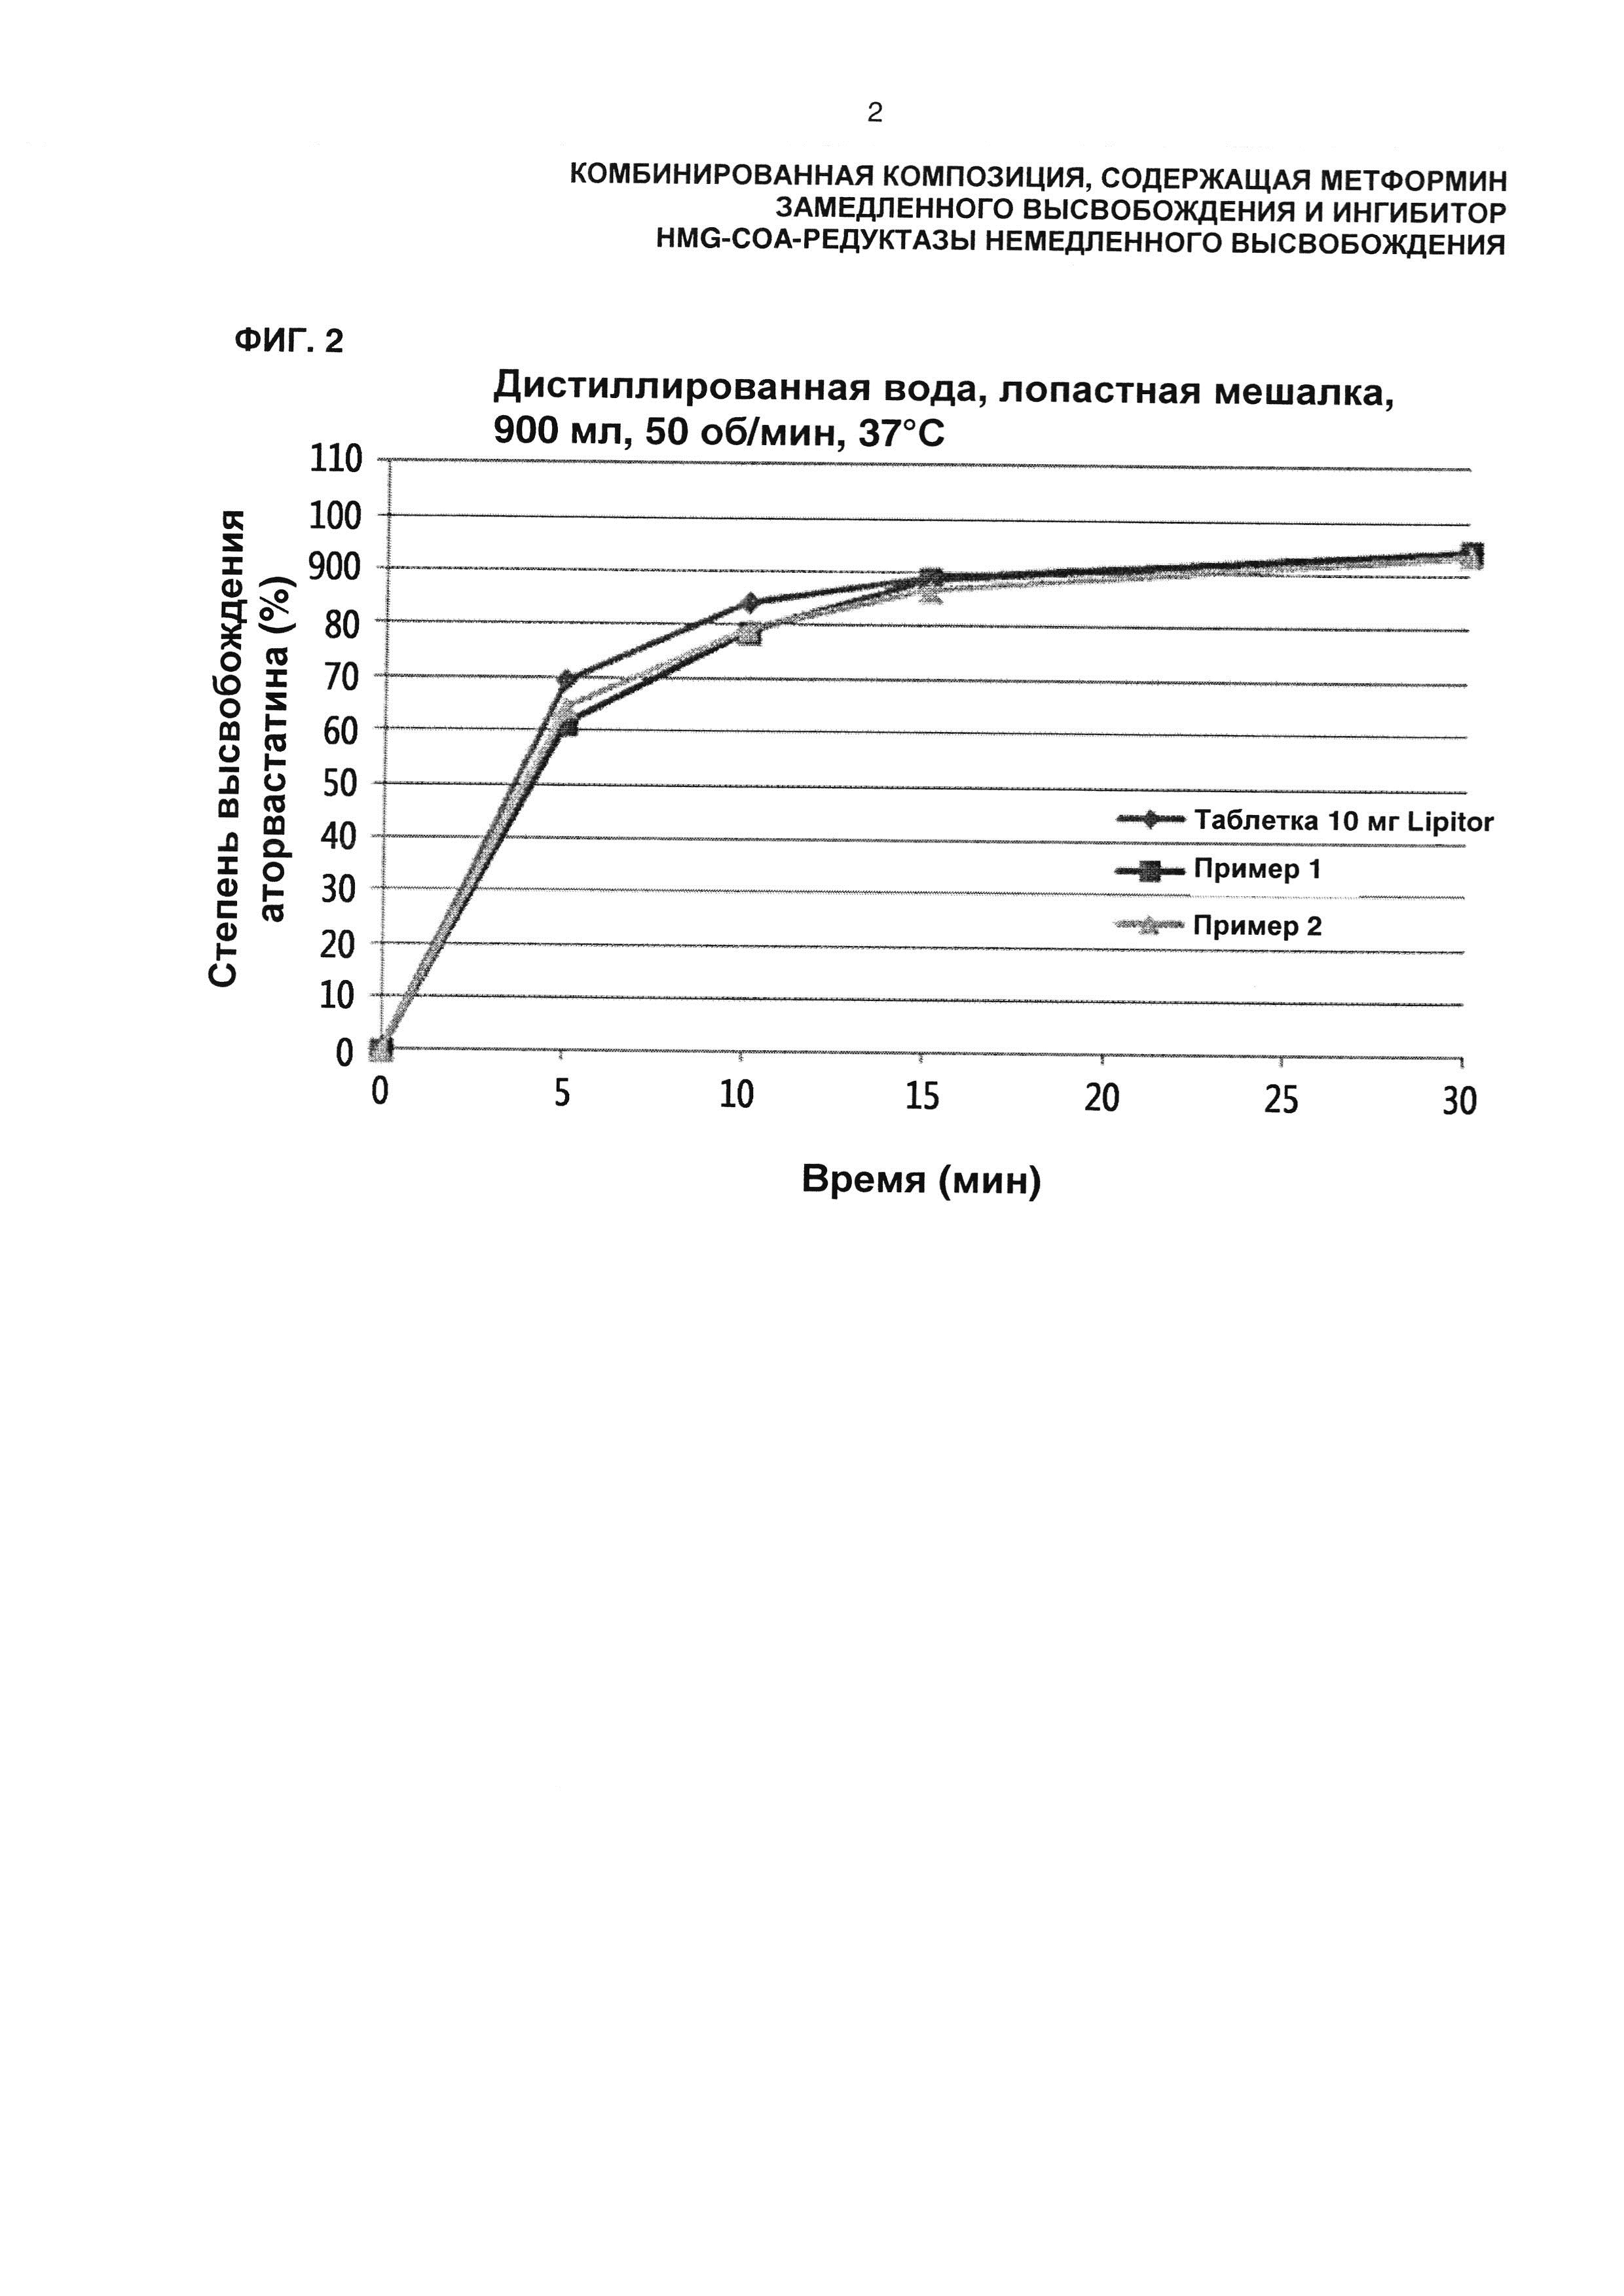 Комбинированная композиция, содержащая метформин замедленного высвобождения и ингибитор HMG-CoA-редуктазы немедленного высвобождения